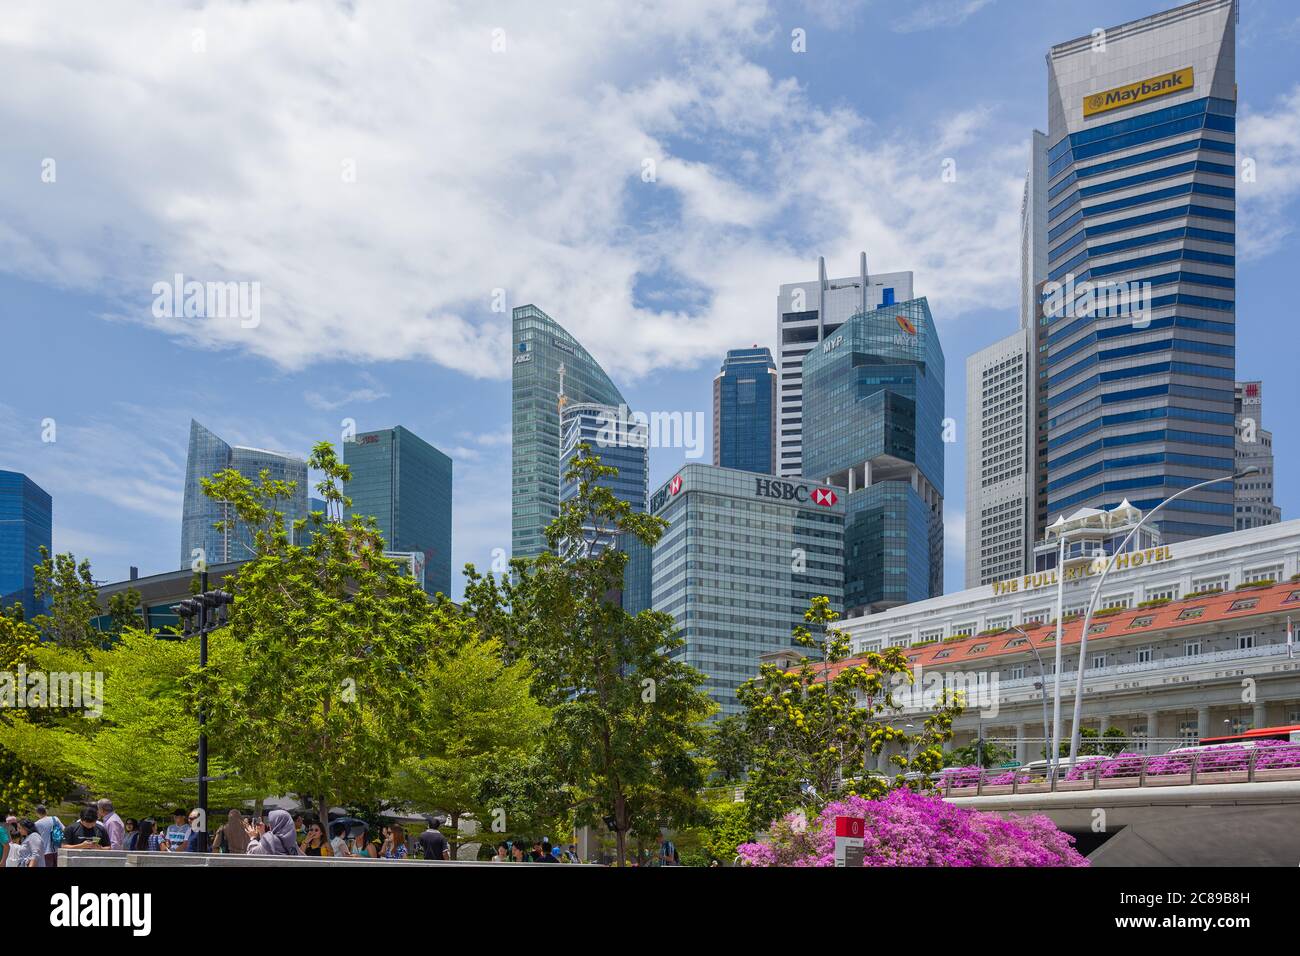 Densamente construido Distrito Central de Negocios, Singapur, con las oficinas de prestigiosas empresas, contrastando con el tradicional Fullerton Hotel Foto de stock